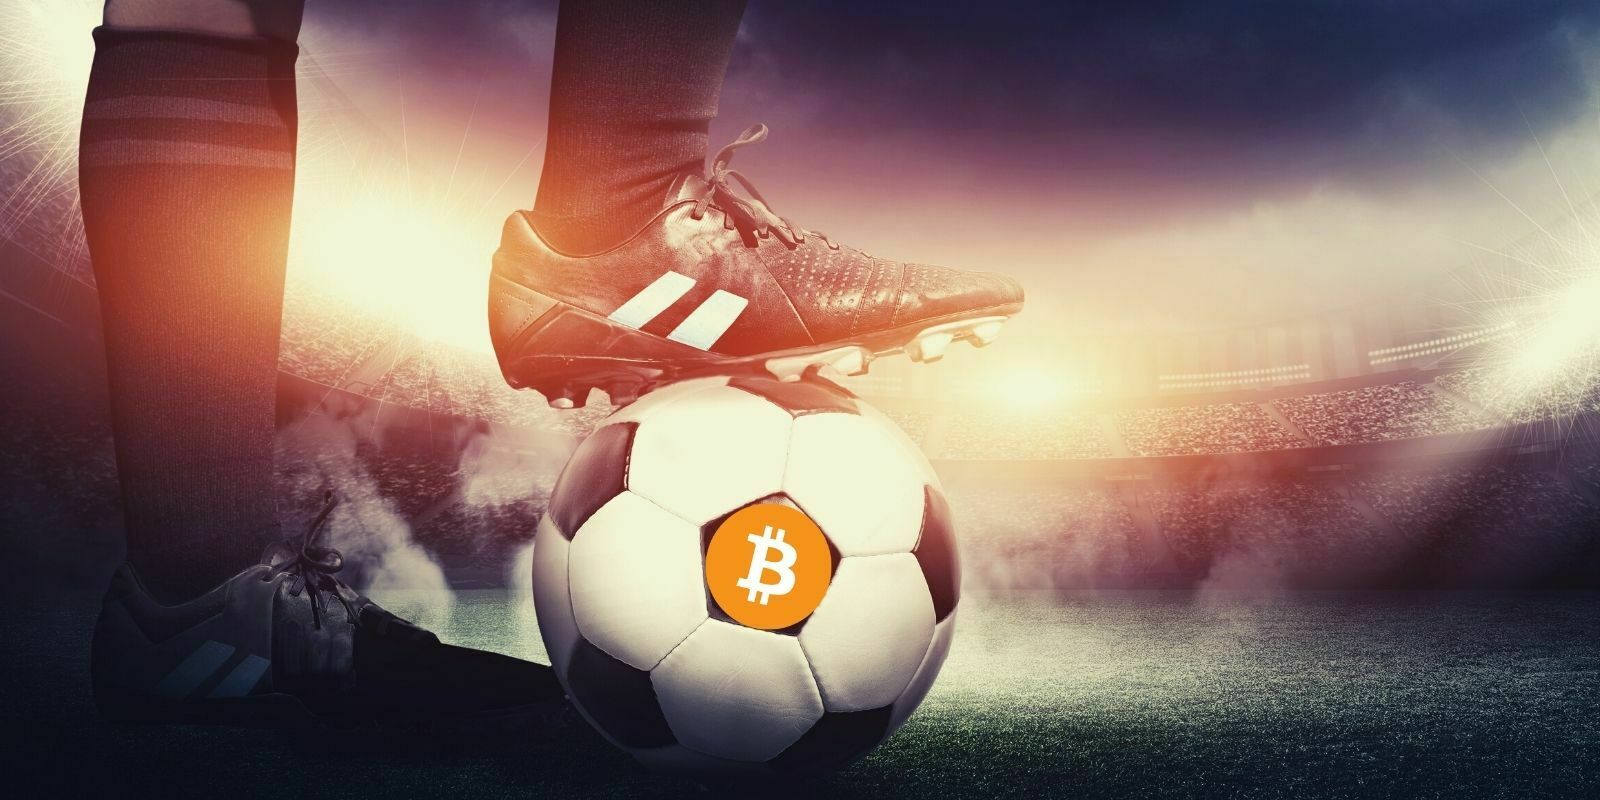 Football : un club espagnol paie le transfert d'un joueur avec du Bitcoin (BTC)